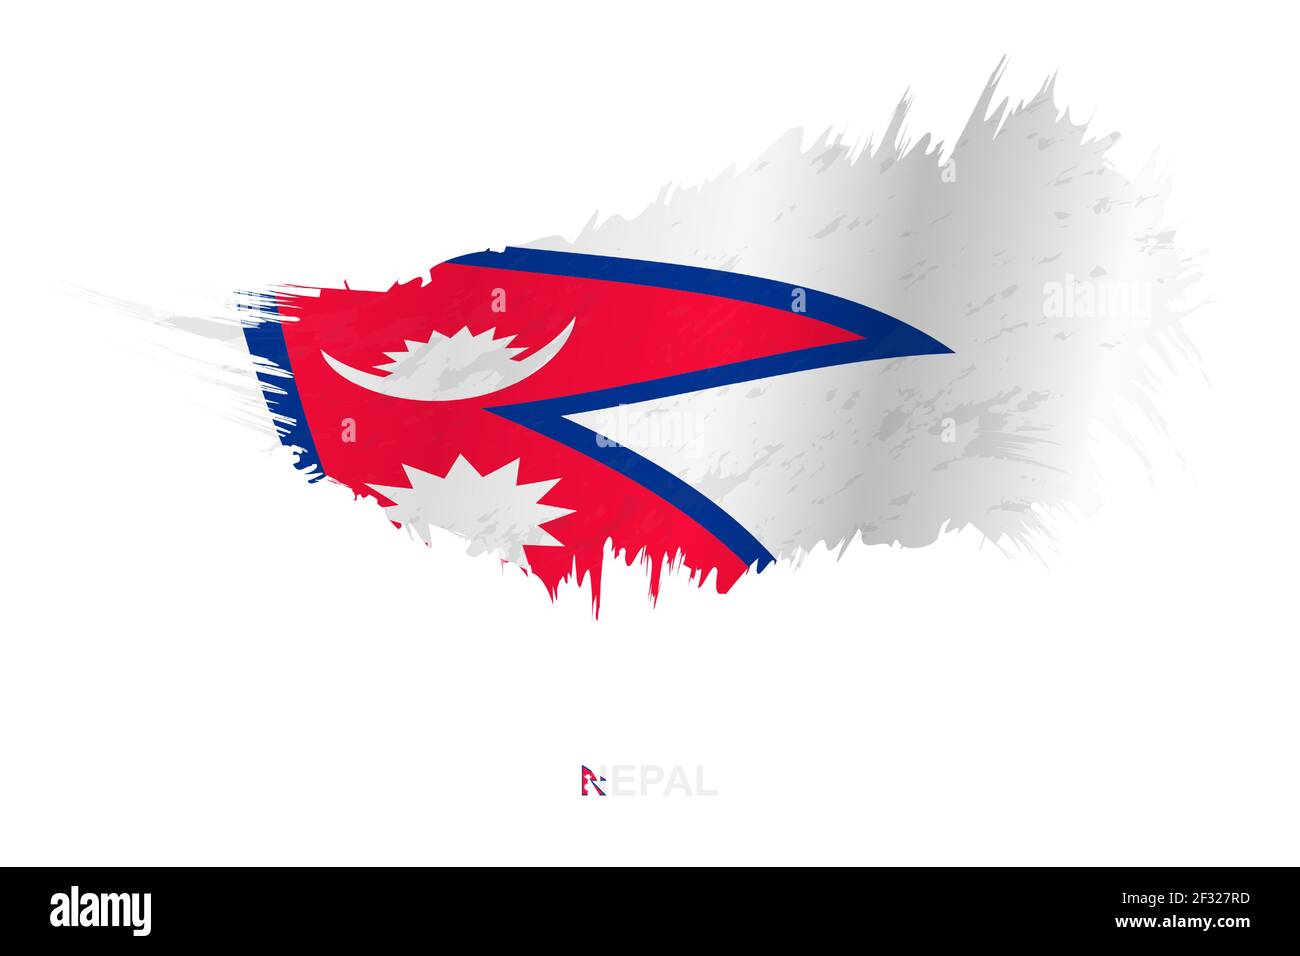 Flagge Nepals im Grunge-Stil mit Windeffekt, Vektor Grunge Pinselstrich Flagge. Stock Vektor